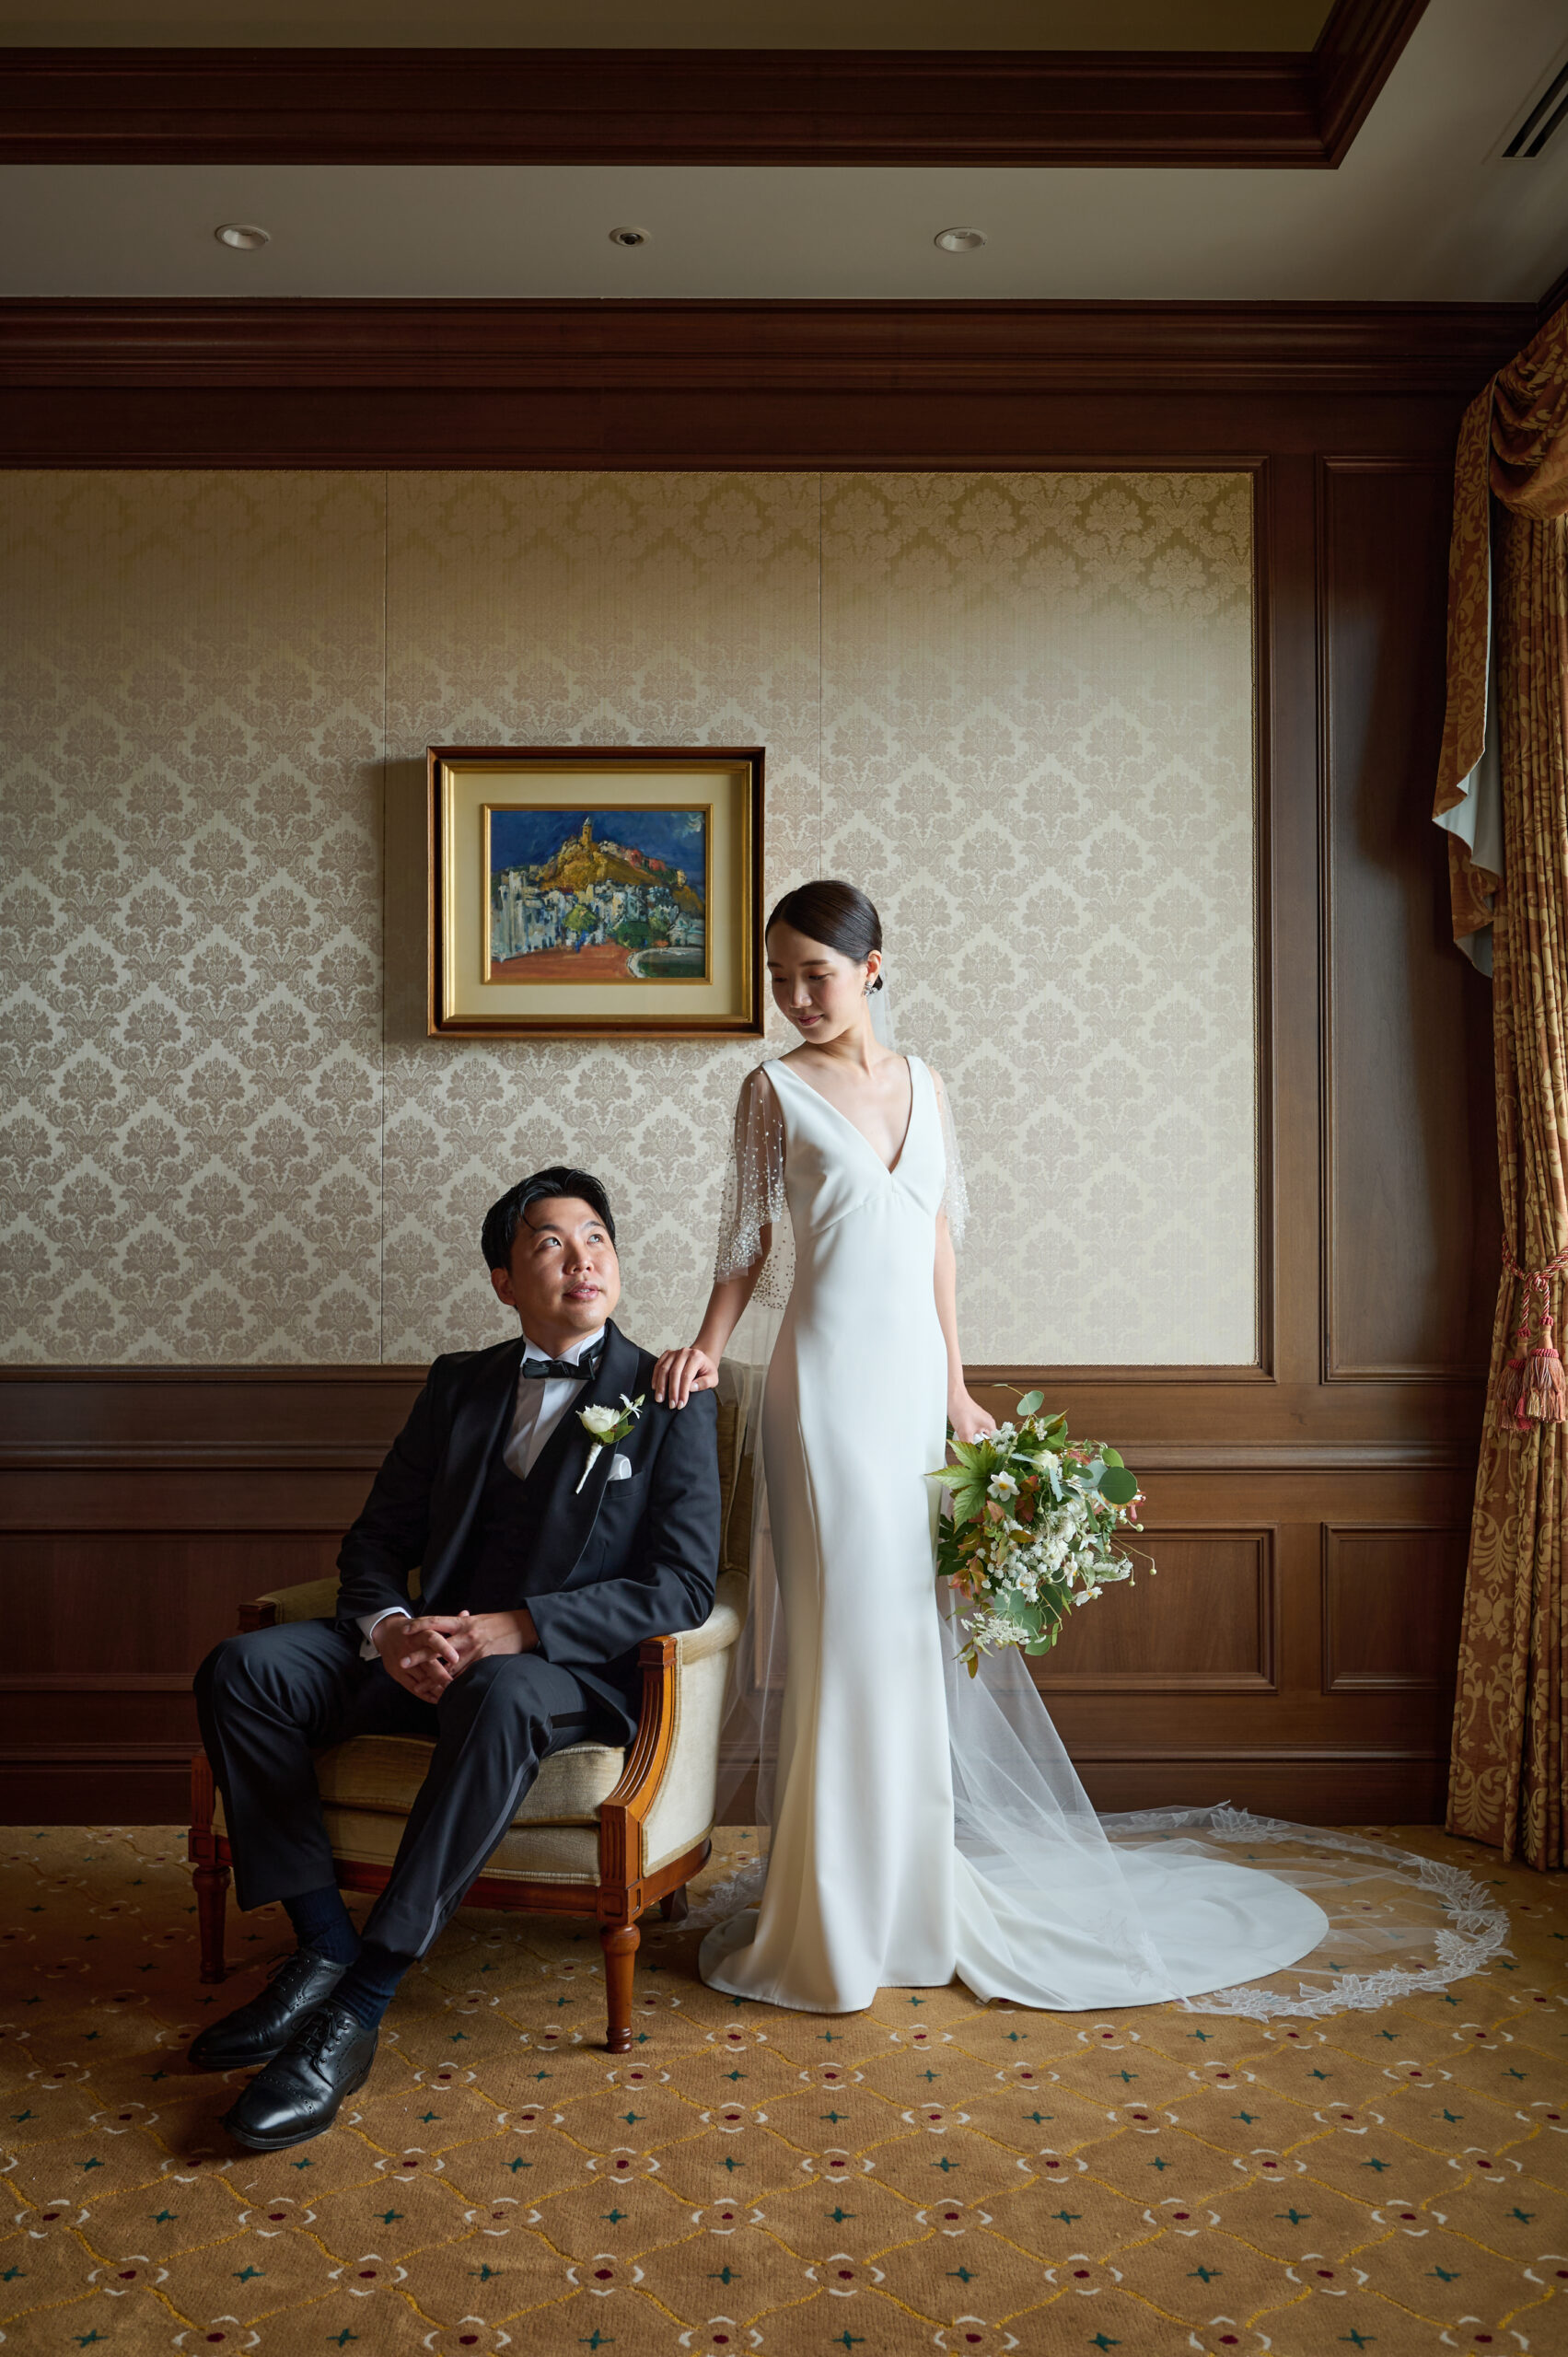 パレスホテル東京が運営する霞山会館のクラシカルな館内で、お二人の魅力を引き出すウェディングドレスとタキシードは、いつの時代も変わることのない普遍的な美しさを体現します